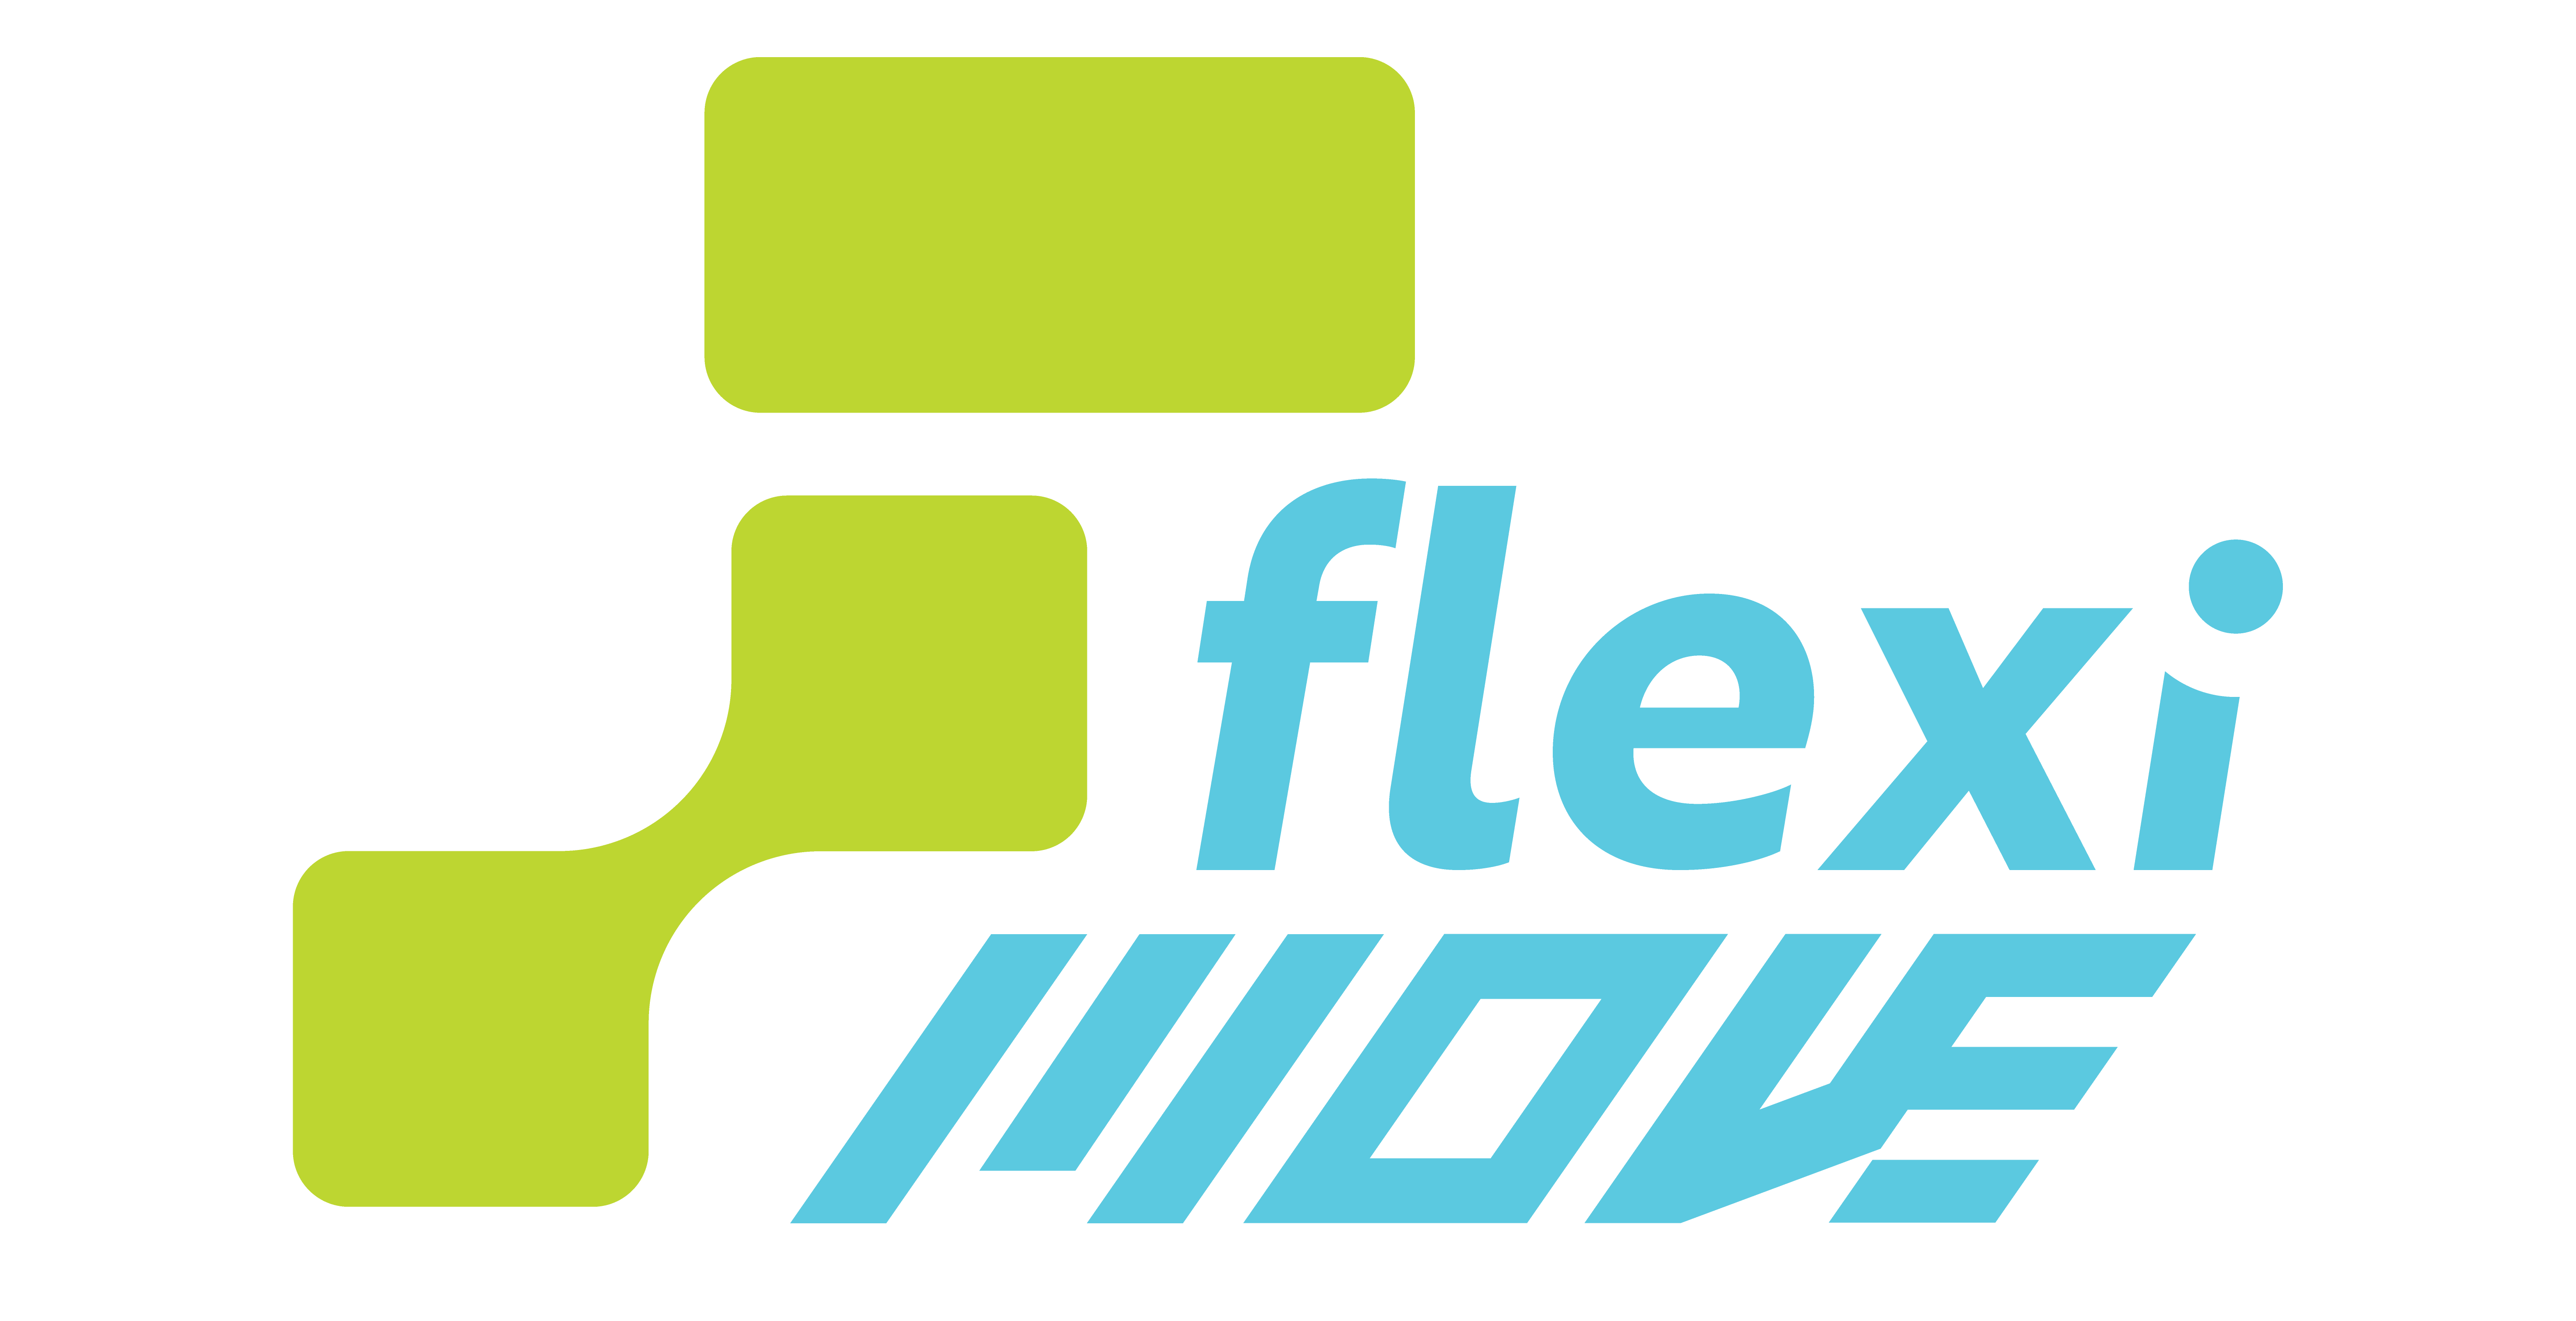 Flexi Move